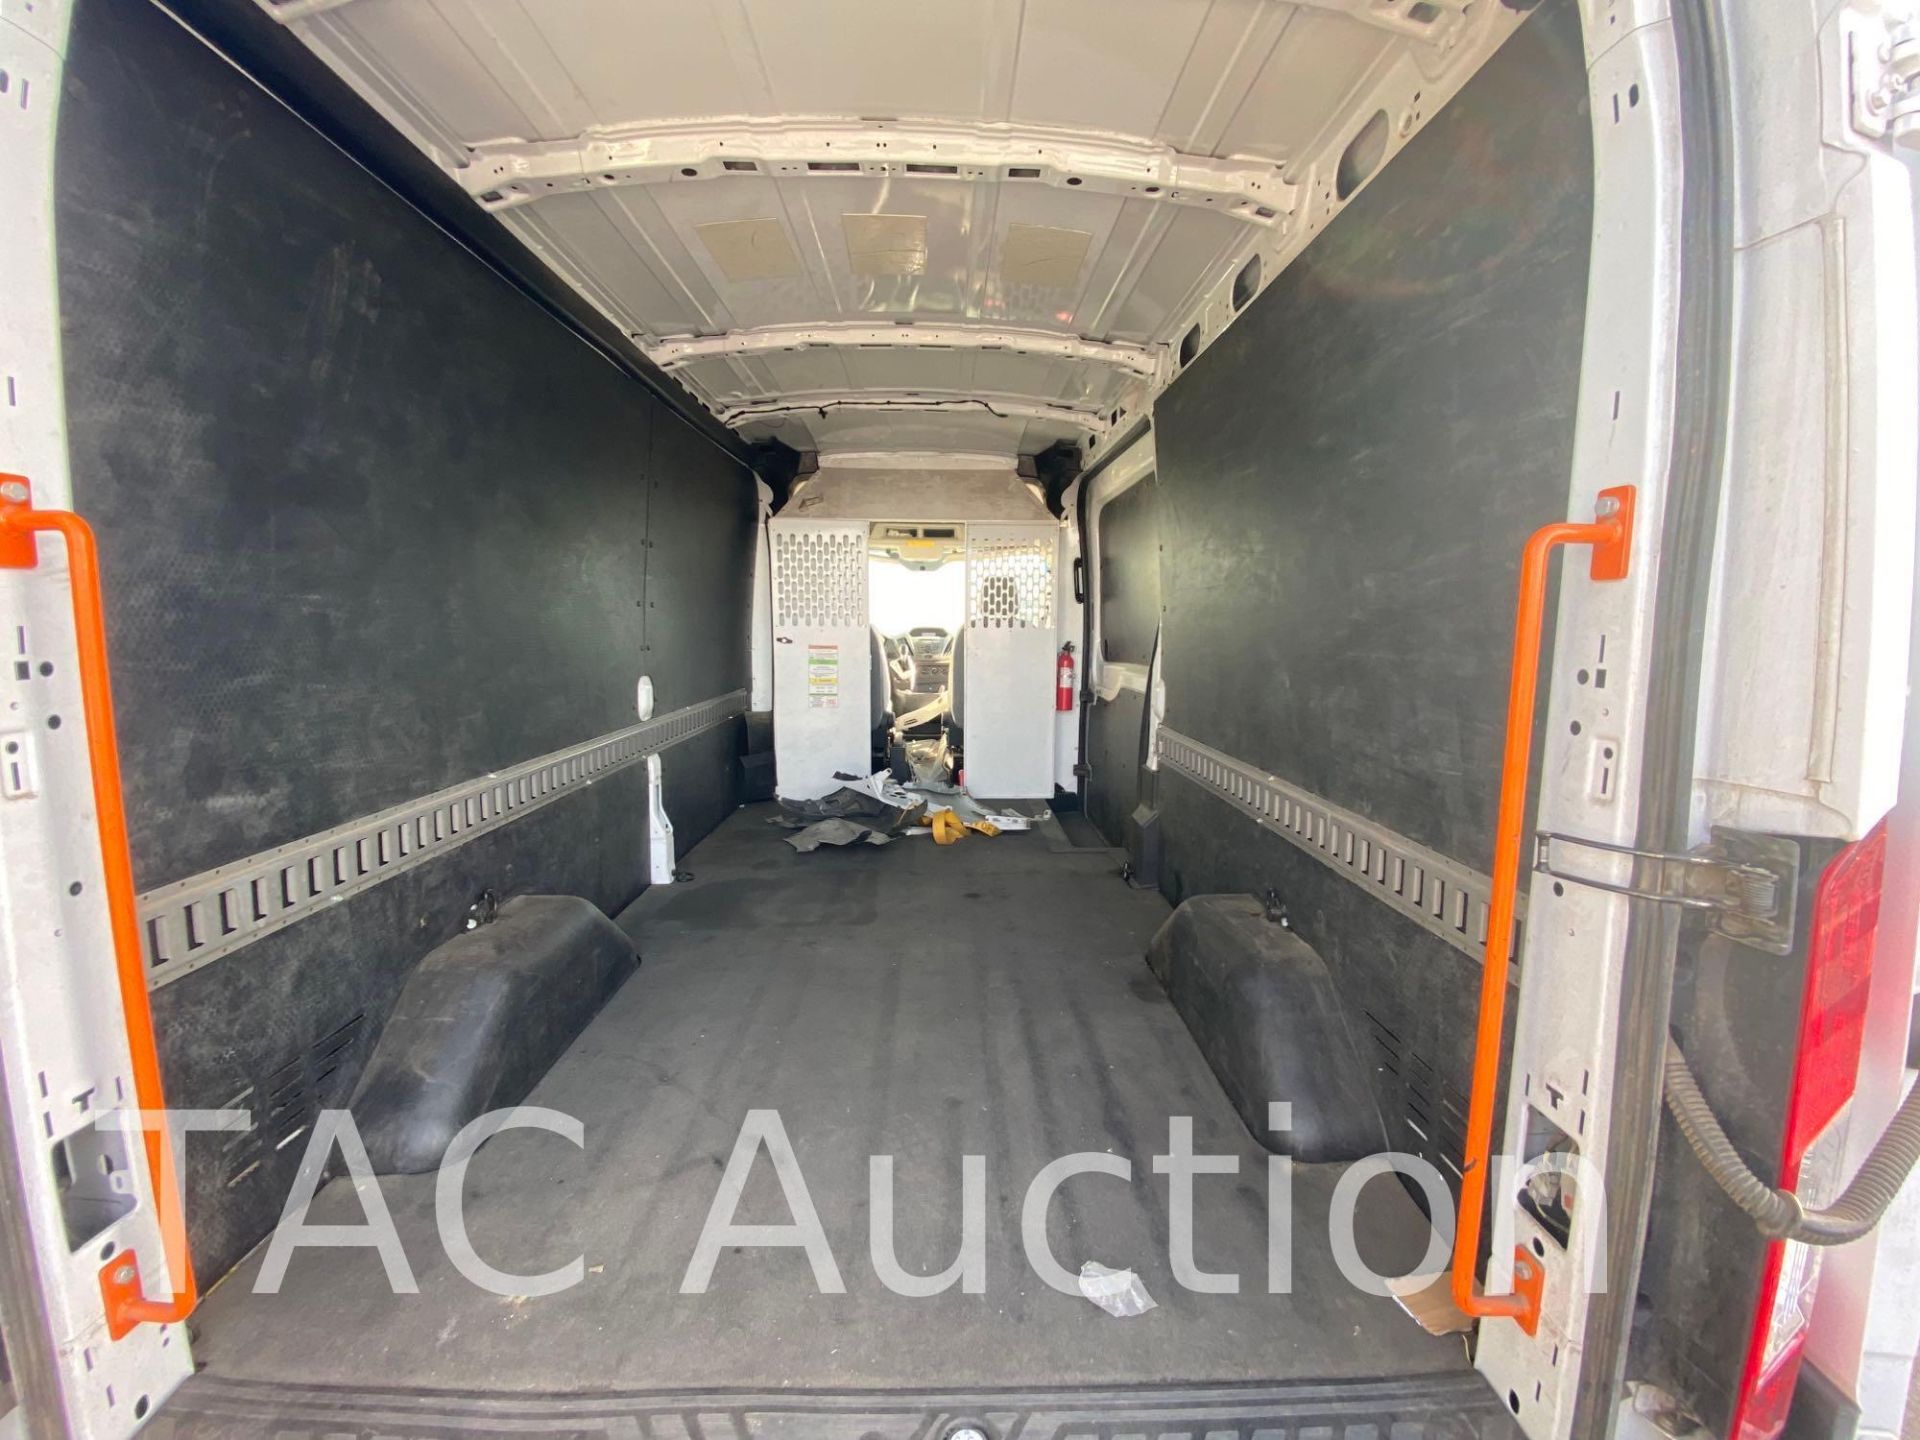 2019 Ford Transit 150 Cargo Van - Image 53 of 133